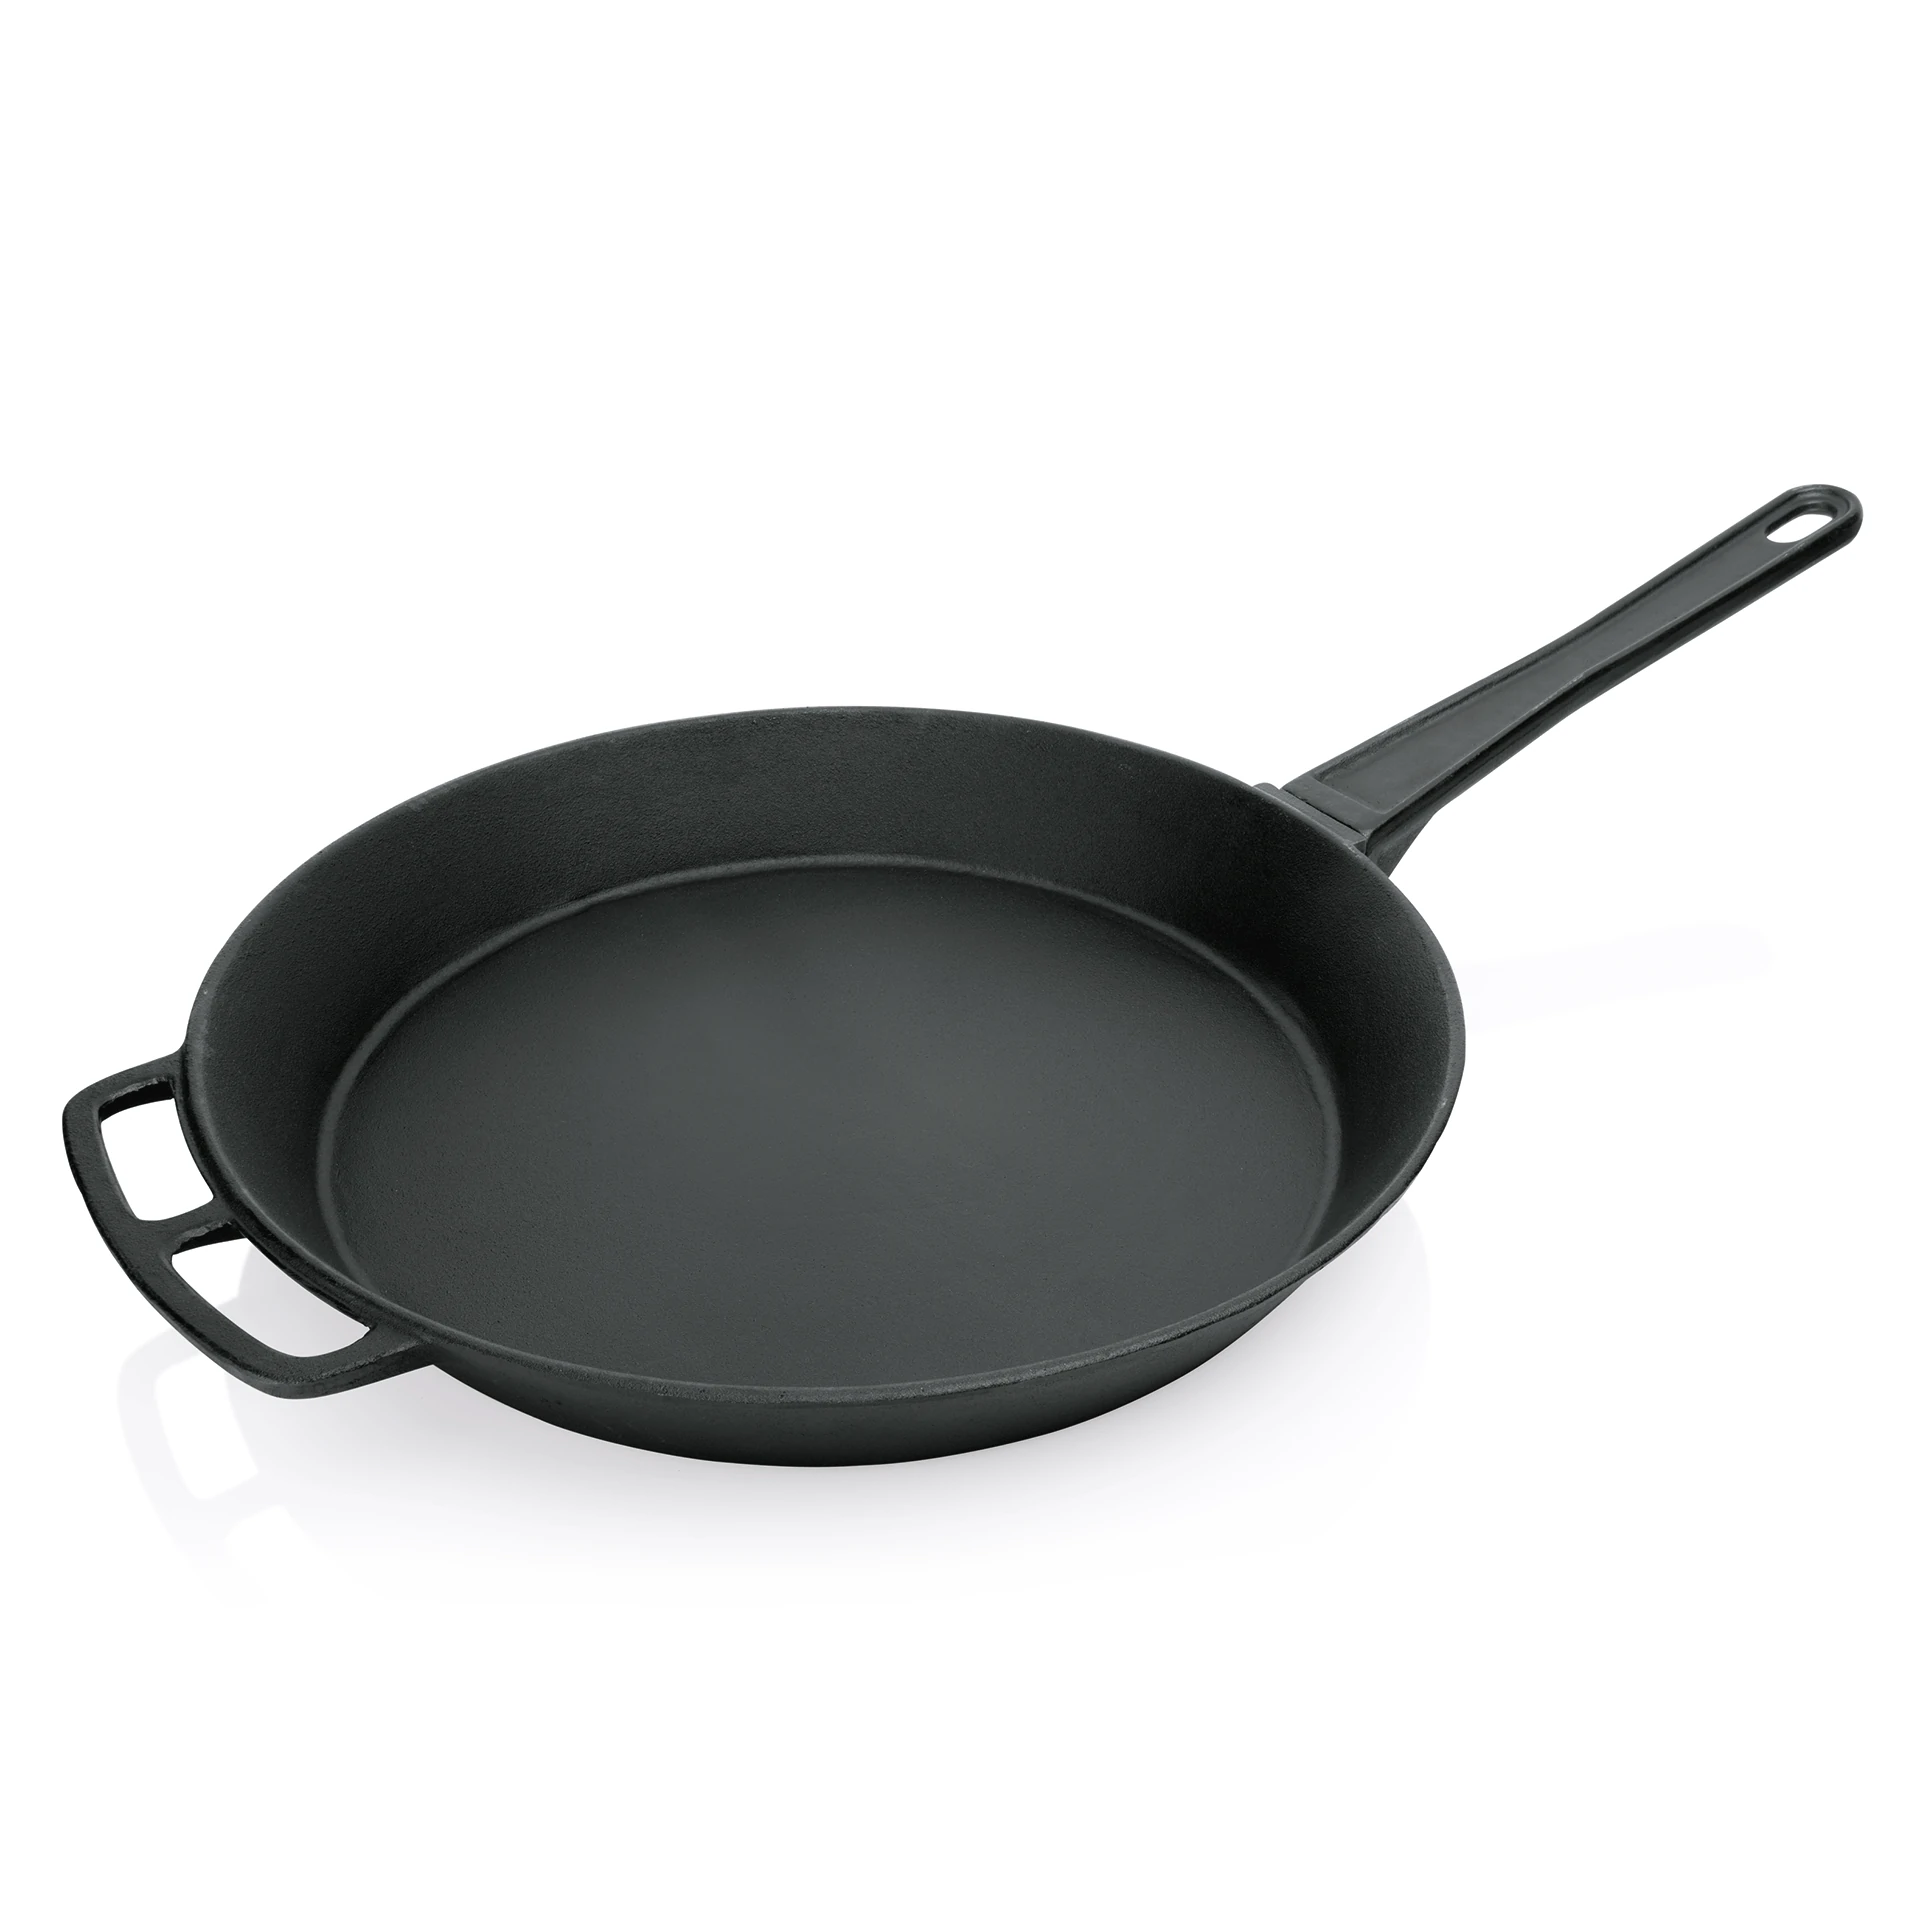 Giant frying pan